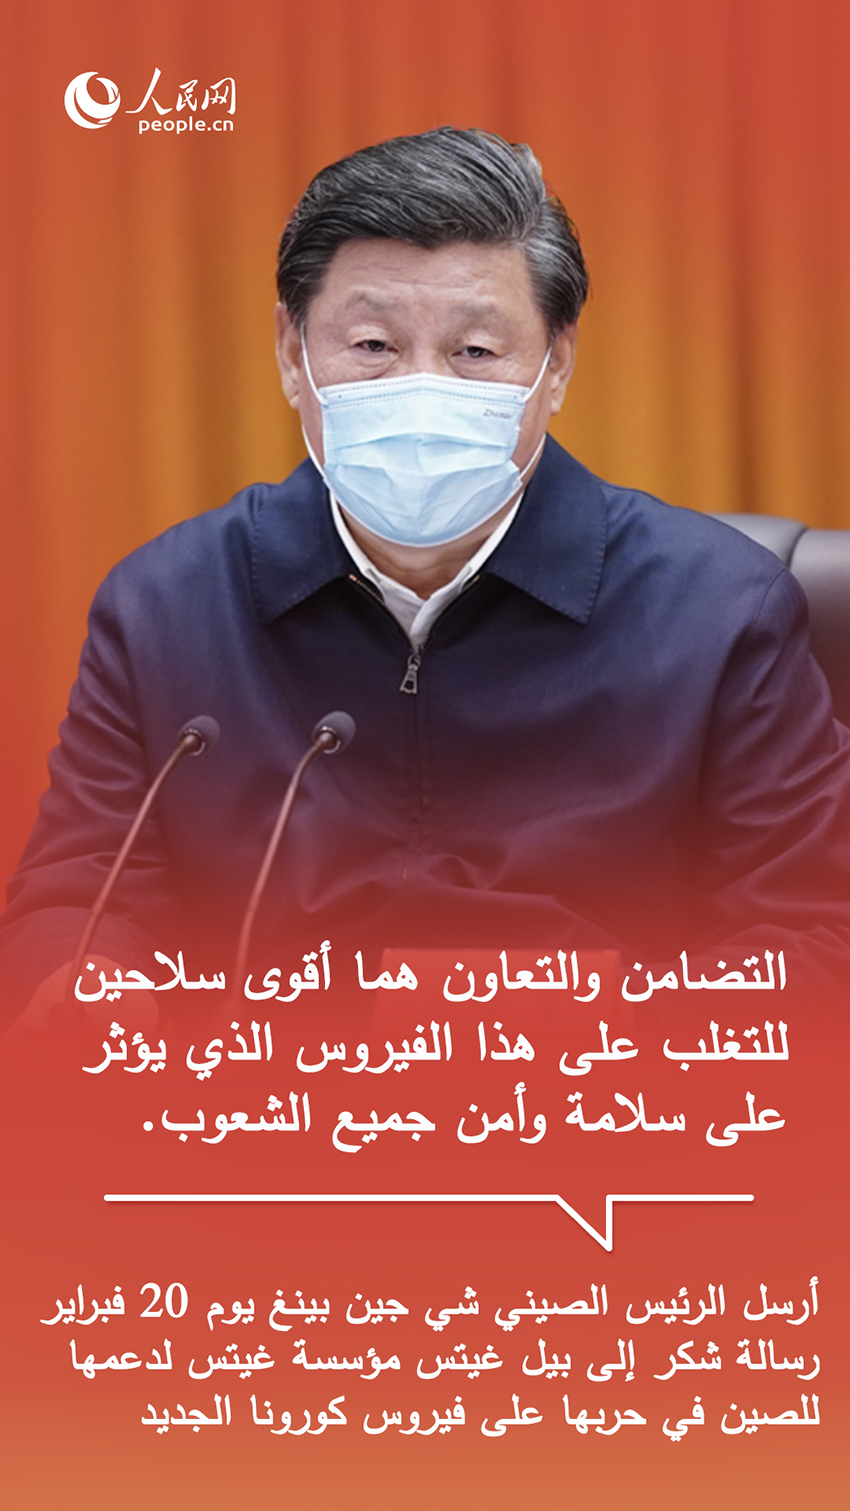 أقوال الرئيس الصيني شي جين بينغ في تعزيز التضامن الدولي لمحاربة كورونا الجديد